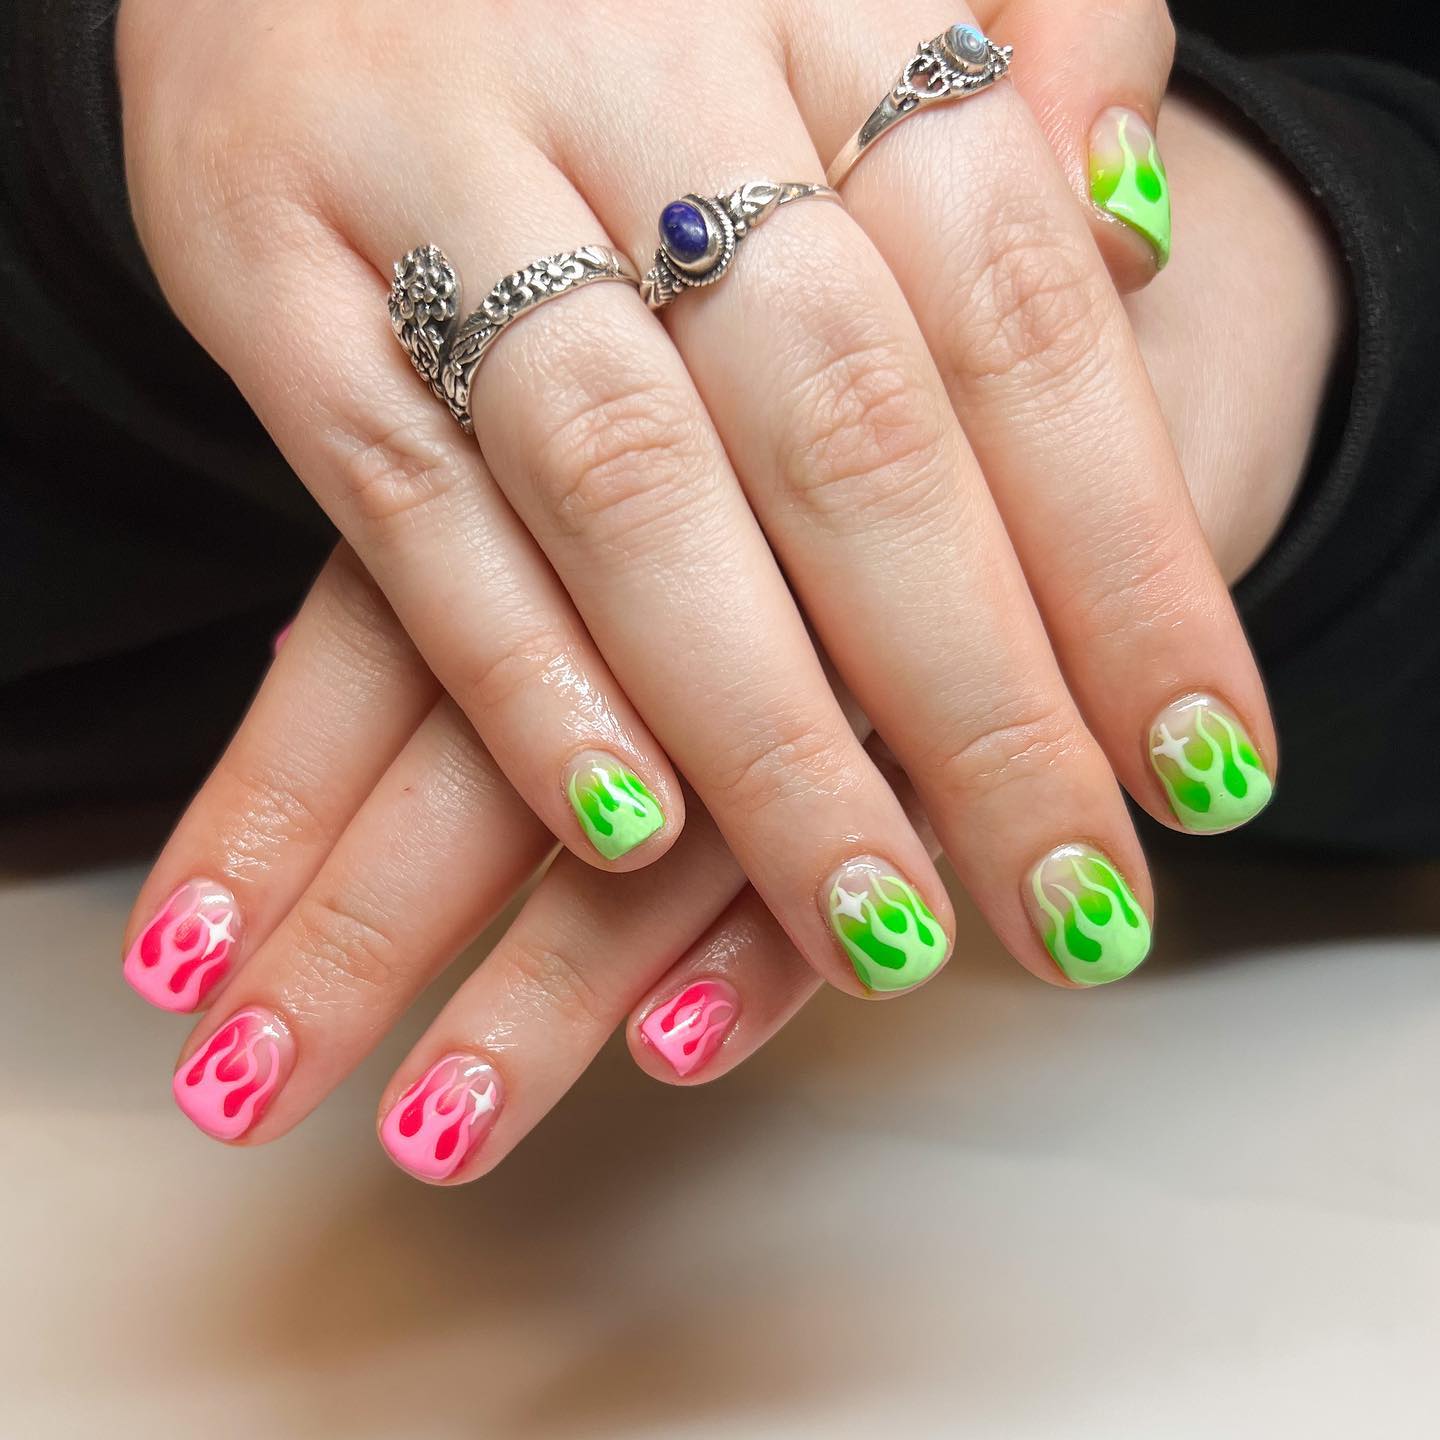 Zbliżenie na paznokcie z uroczymi francuskimi końcówkami w kolorach różowym i zielonym